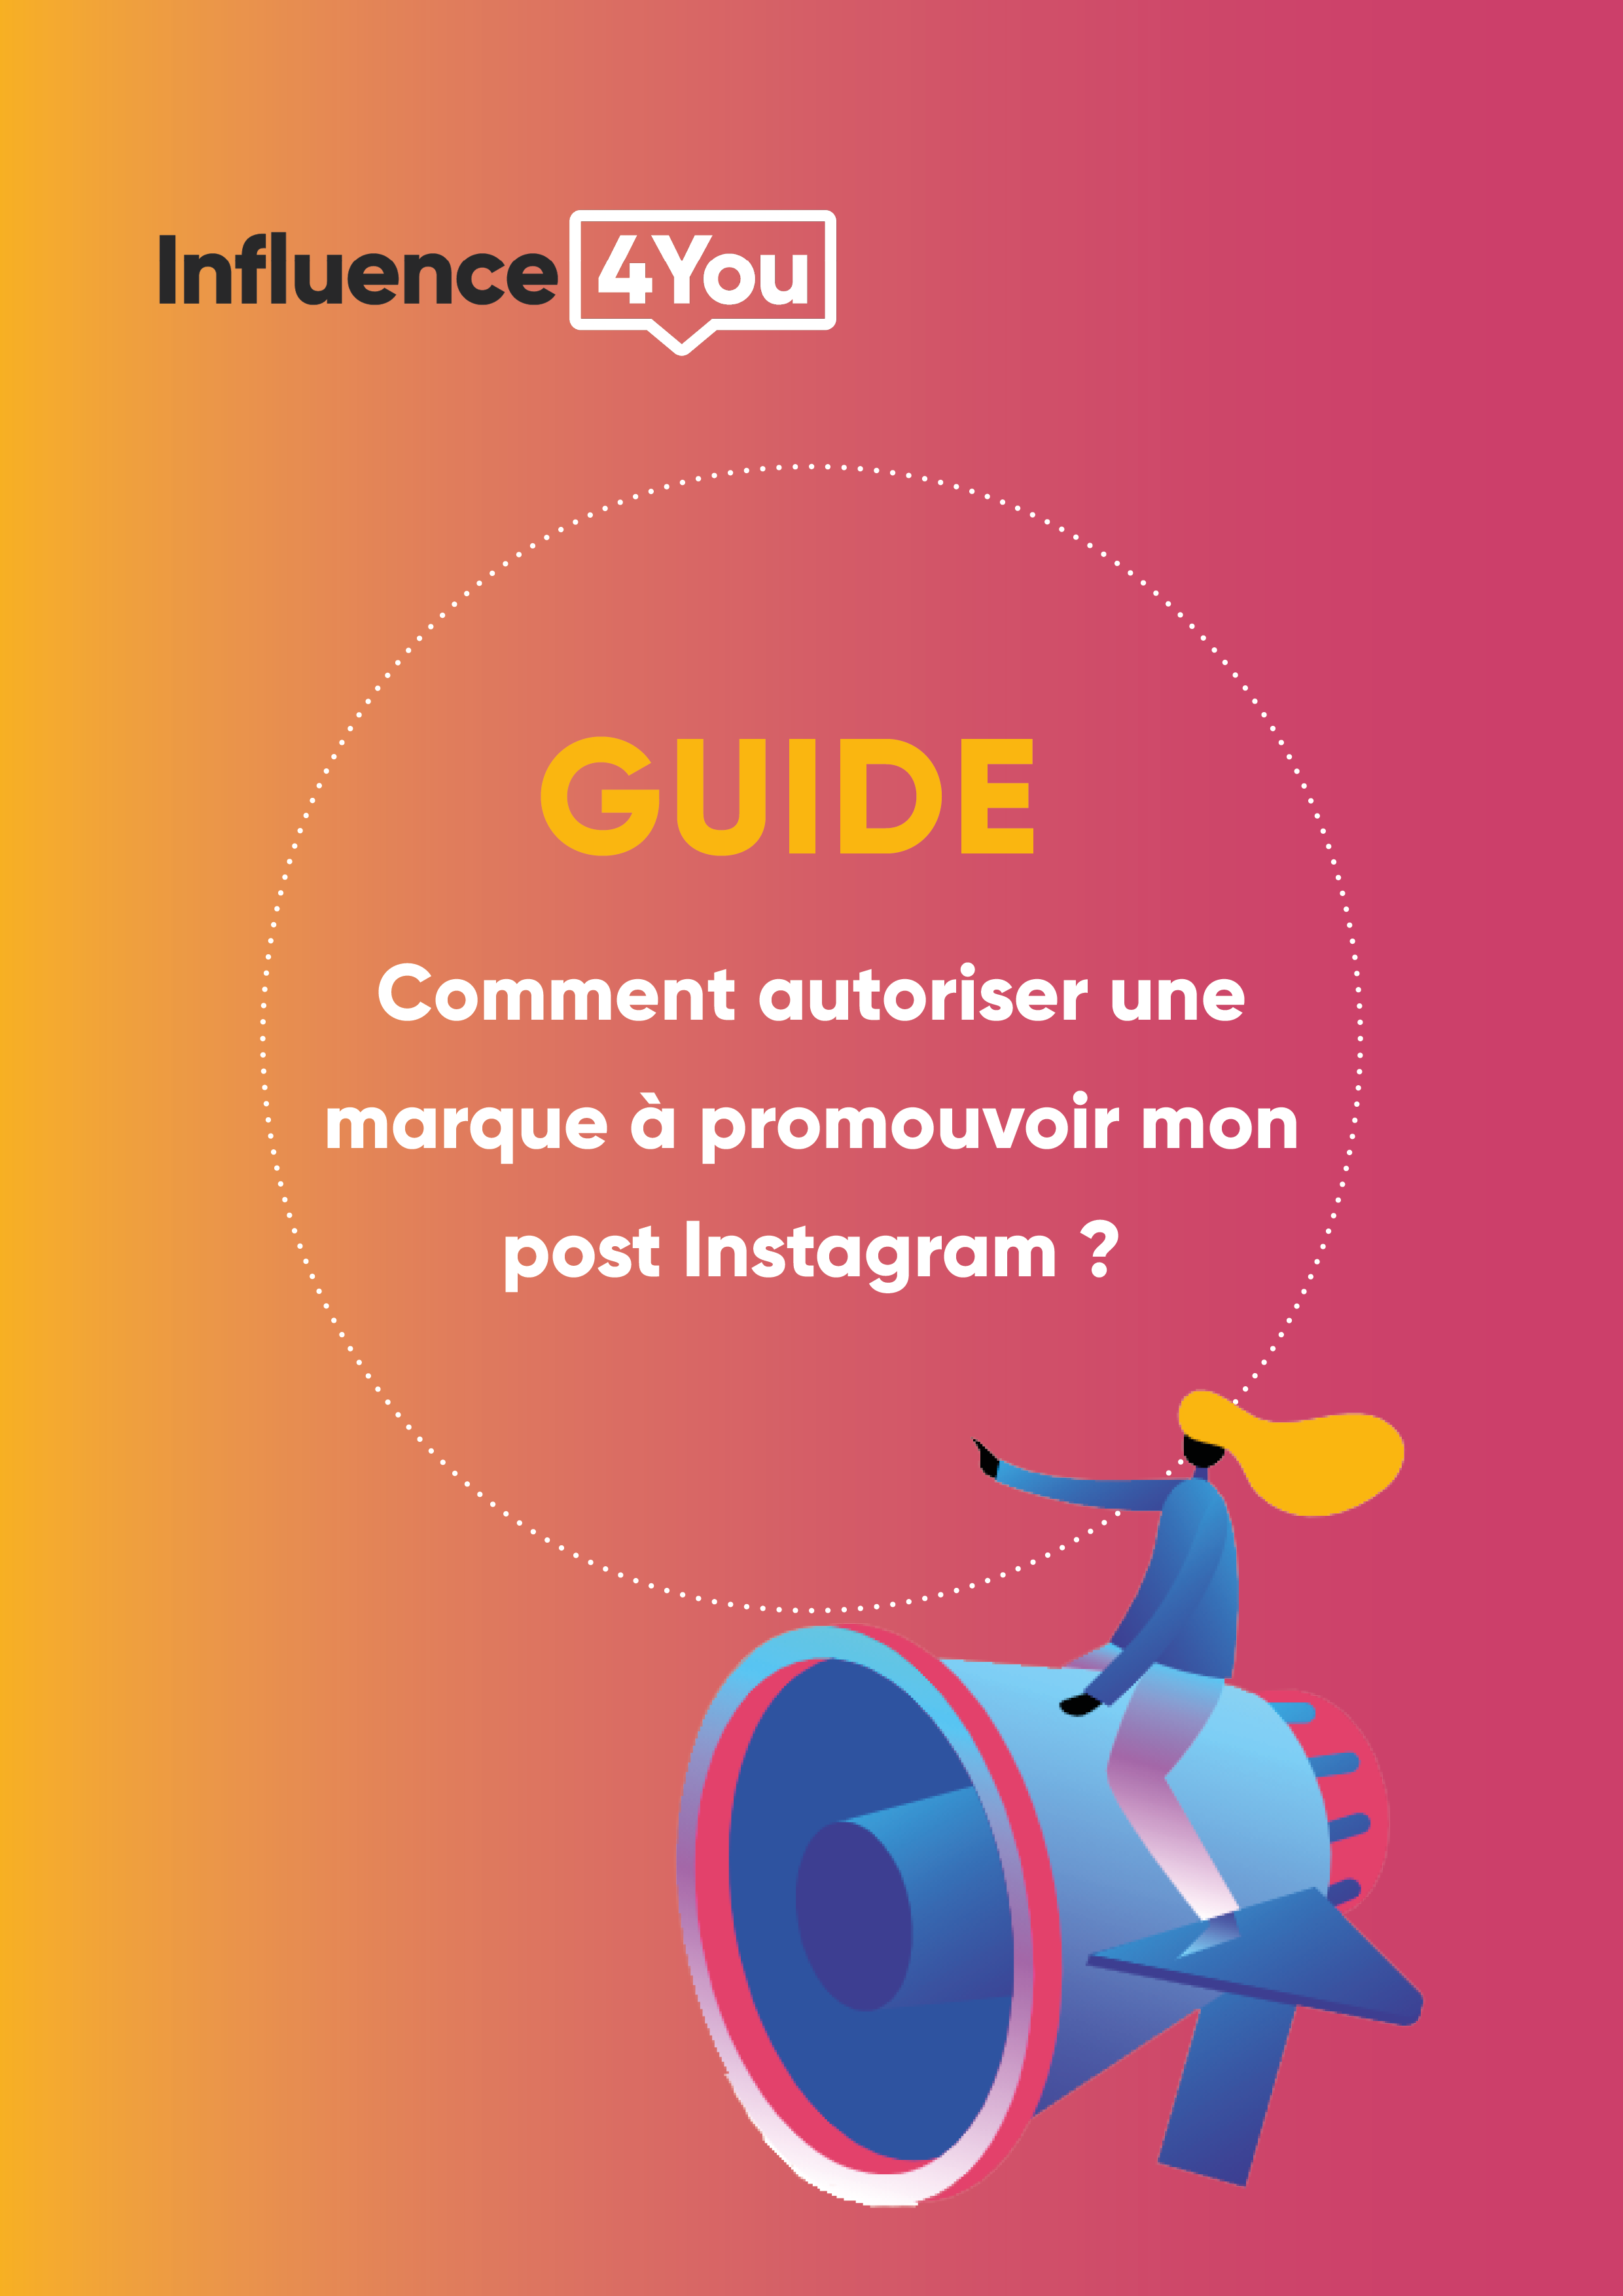 Guide influenceur - Comment autoriser une marque à promouvoir mon post Instagram